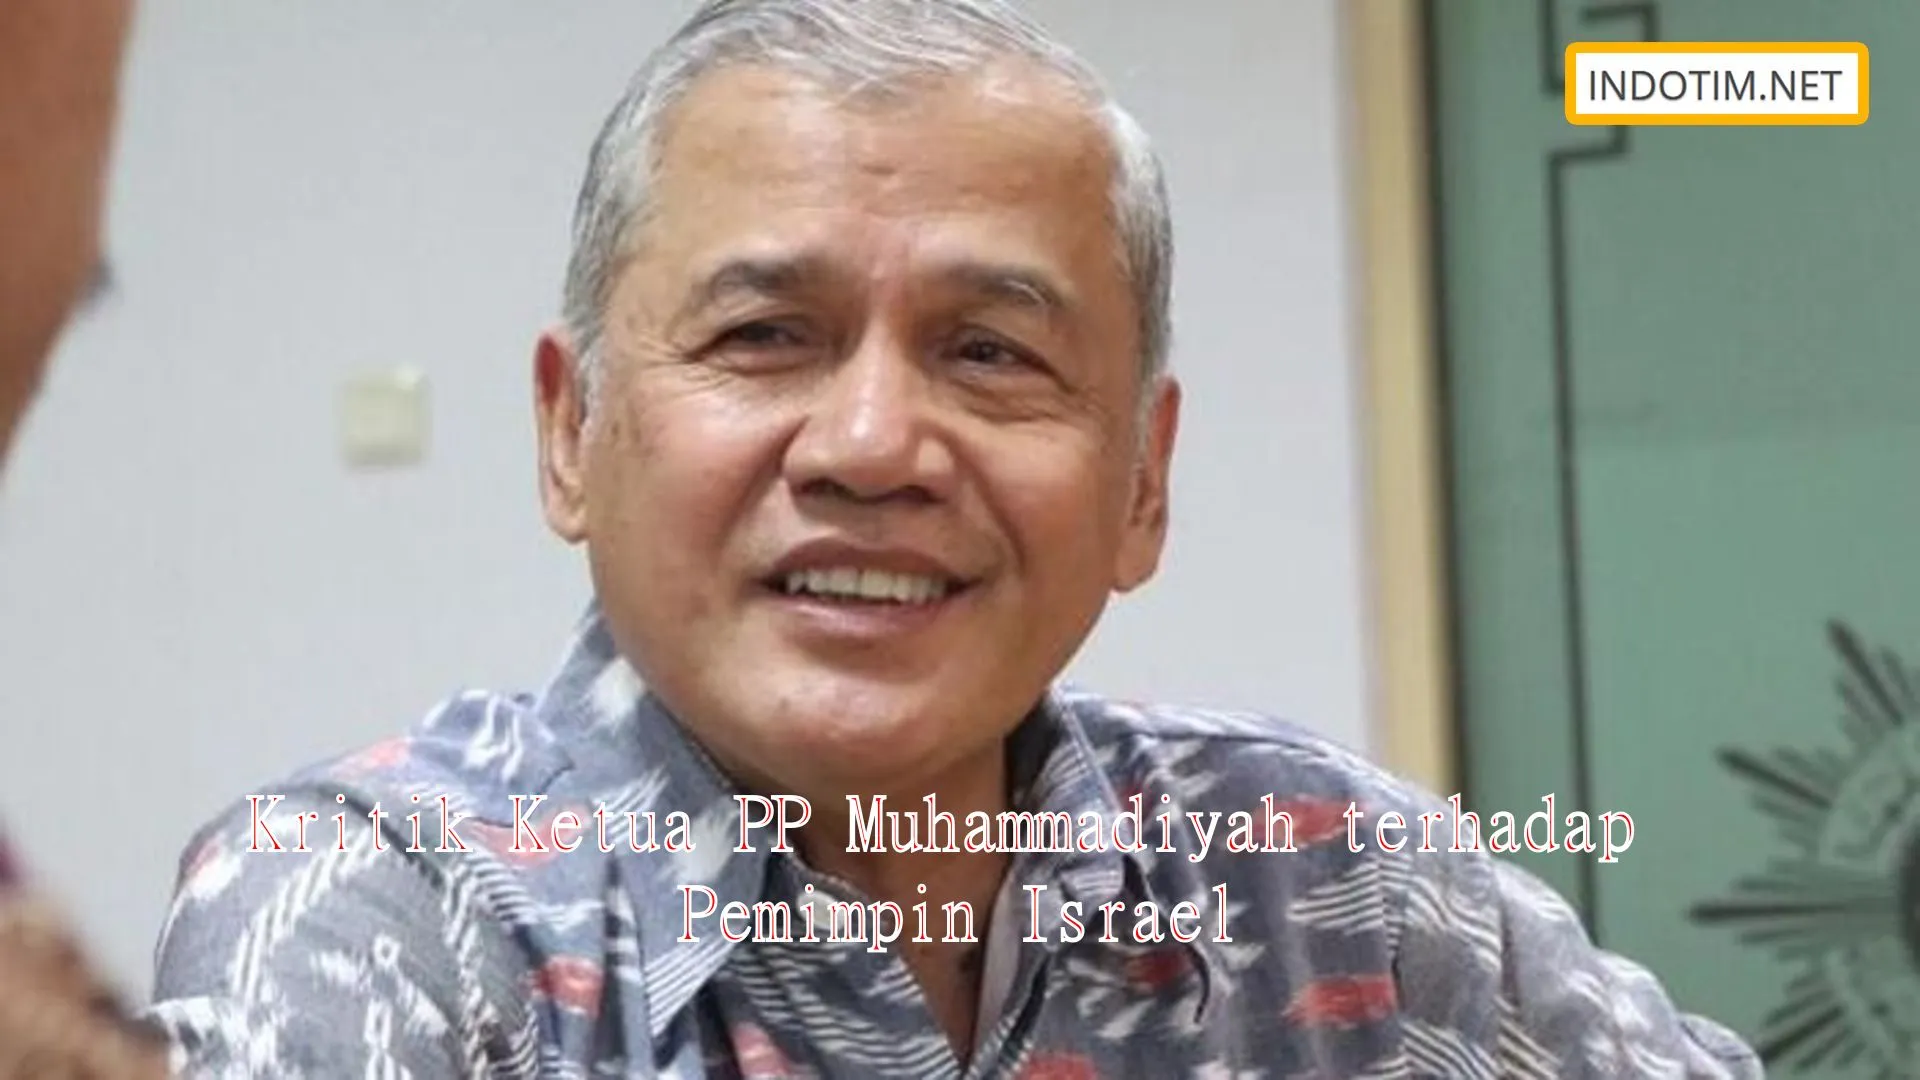 Kritik Ketua PP Muhammadiyah terhadap Pemimpin Israel